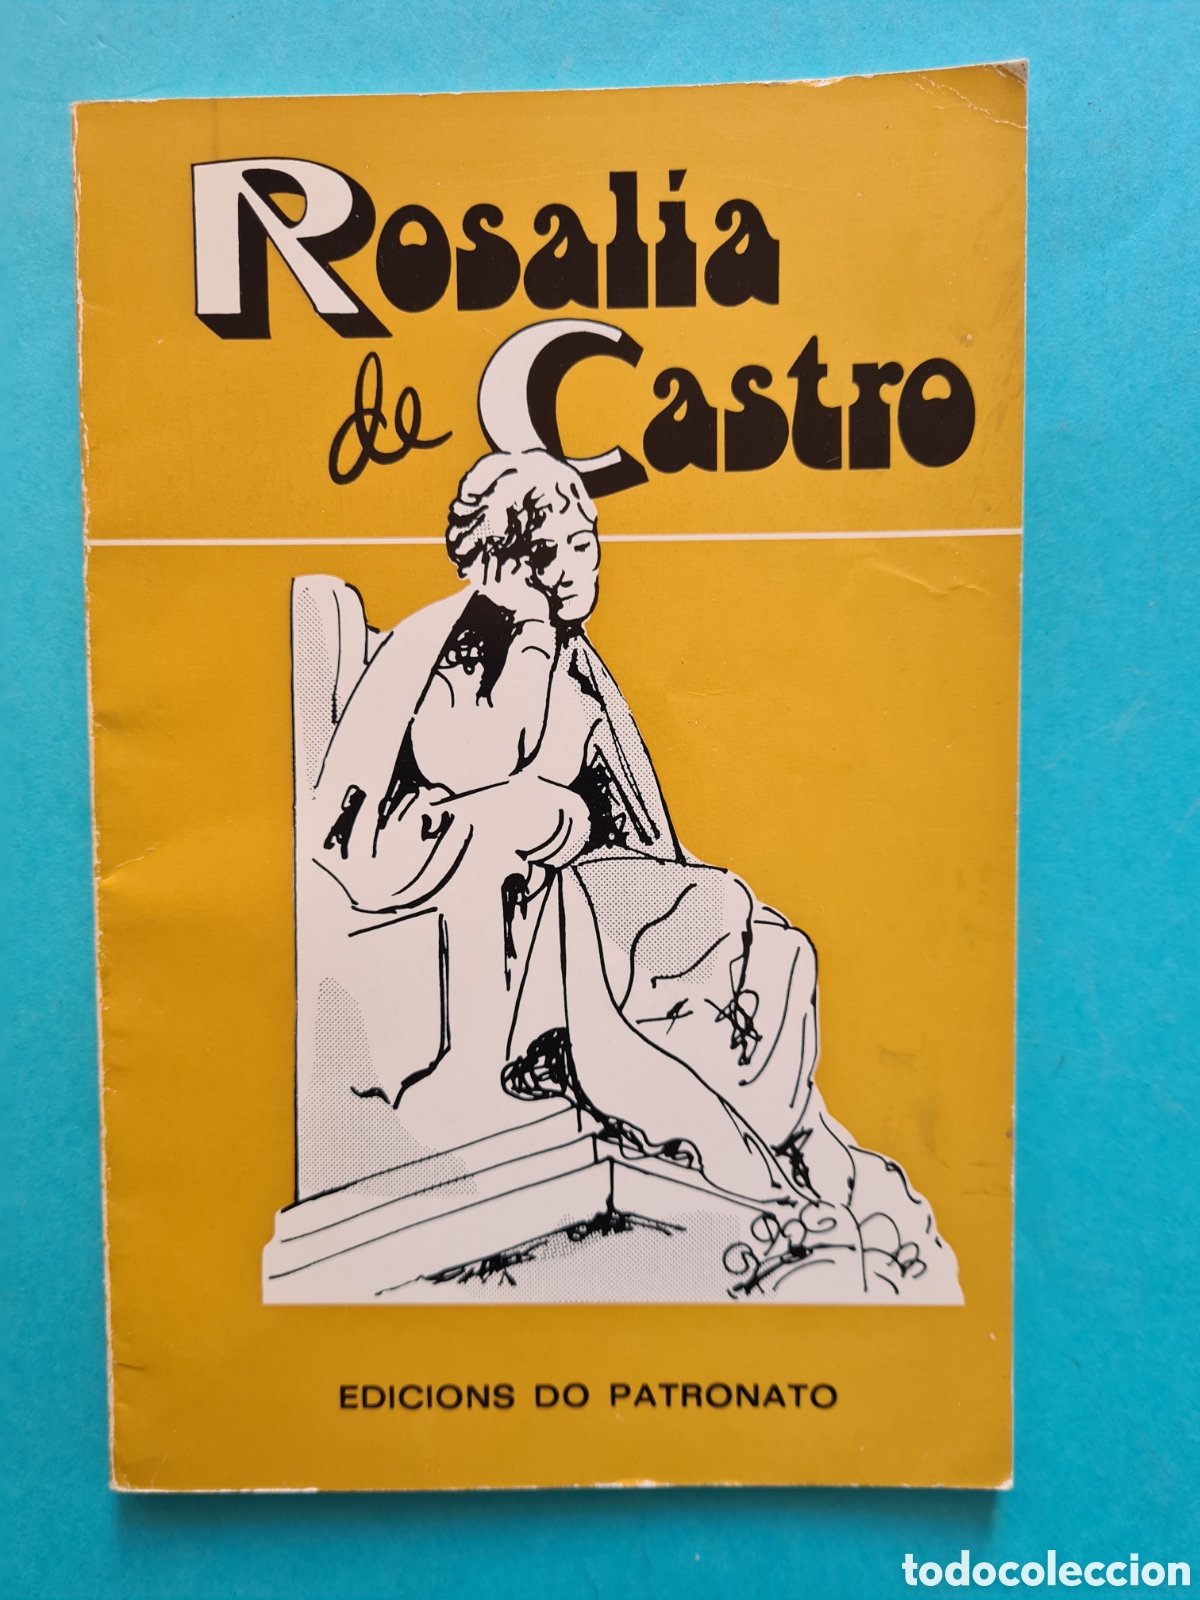 rosalía - así canta rosalia - Compra venta en todocoleccion